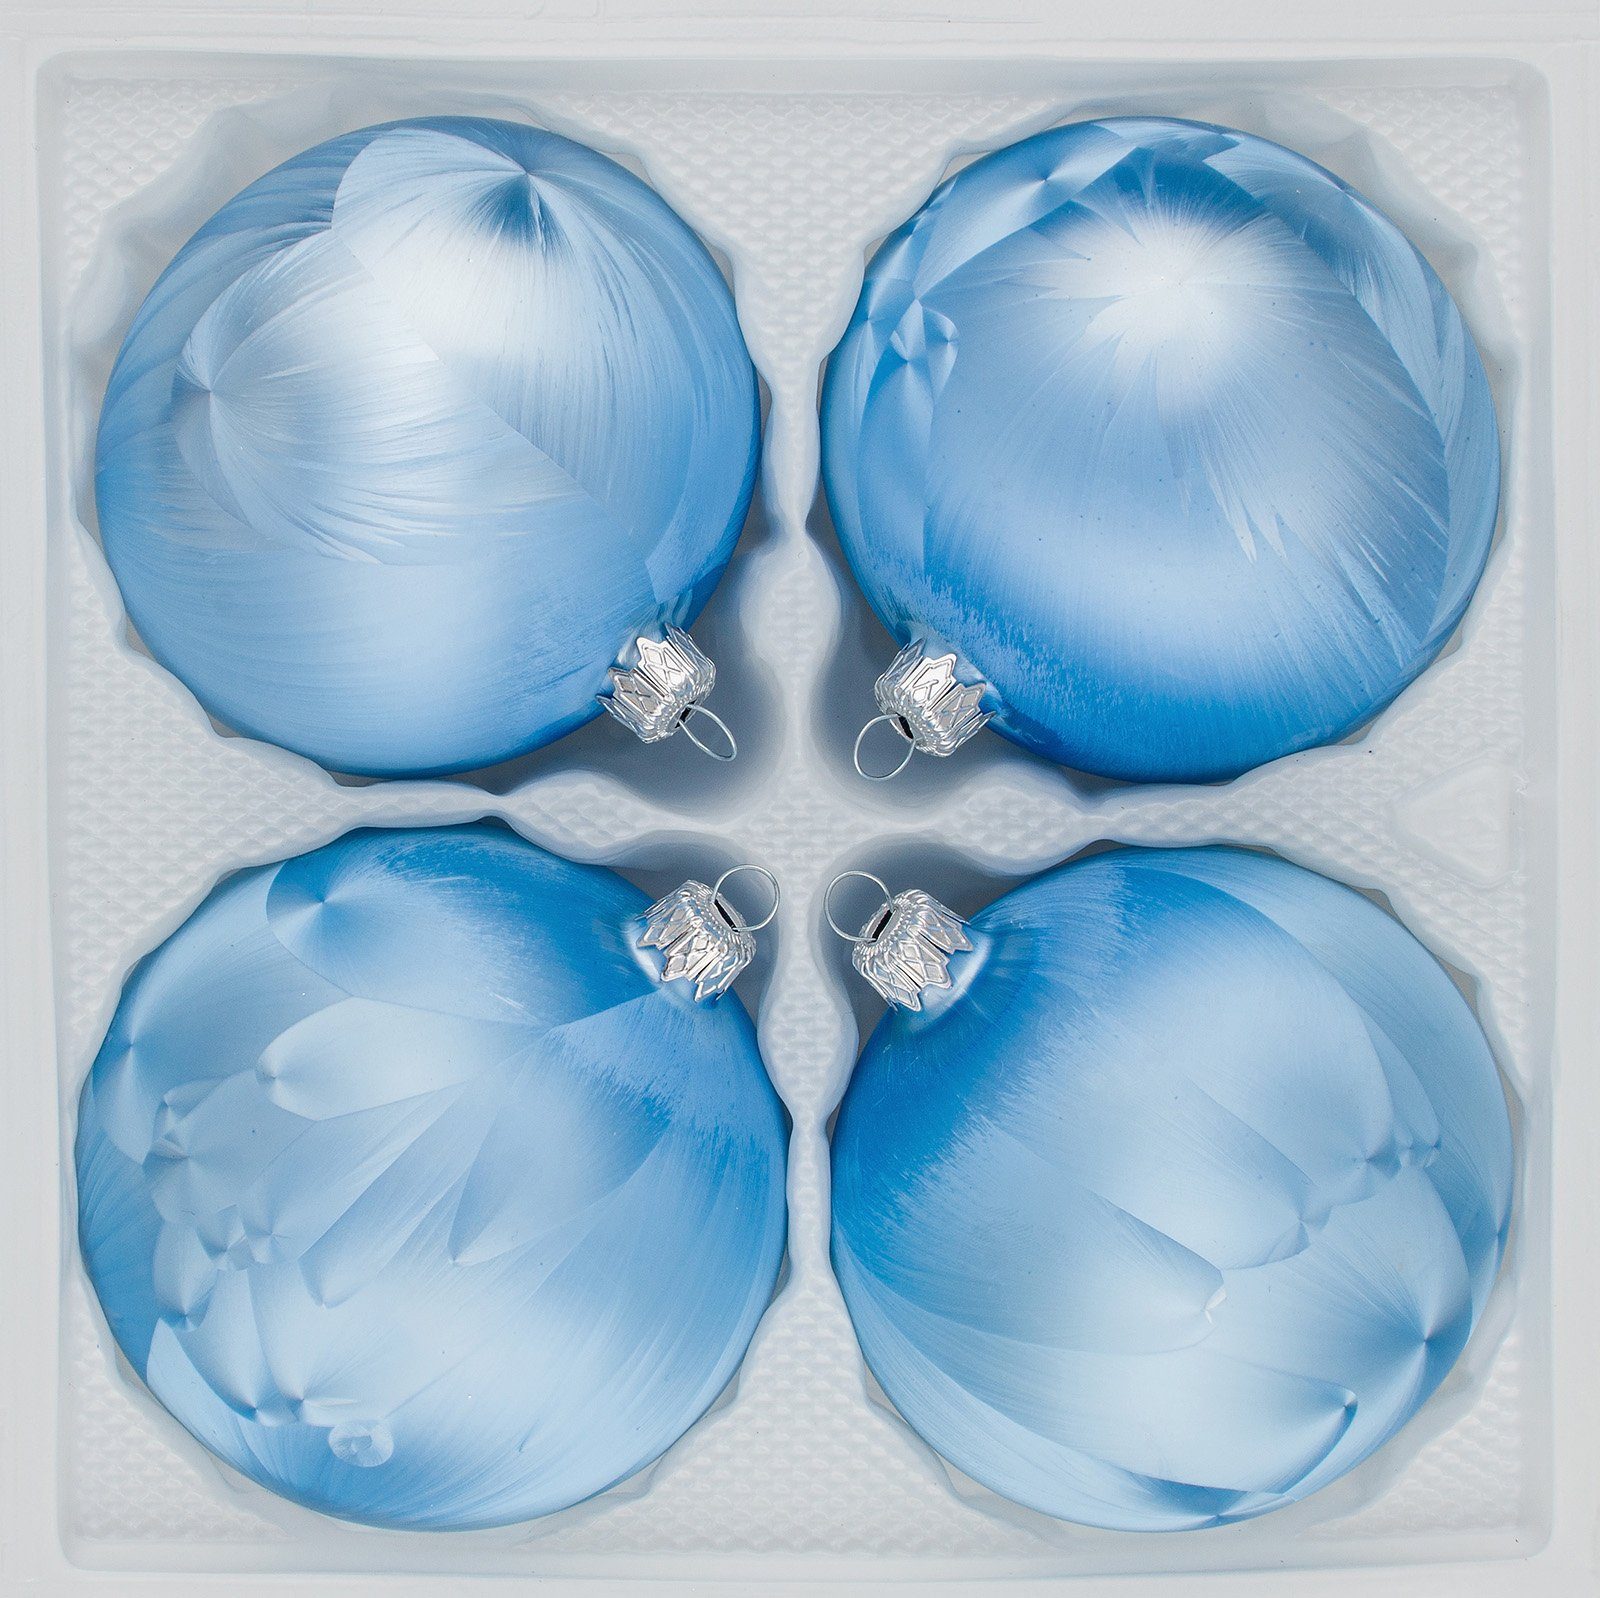 Navidacio Weihnachtsbaumkugel 4 tlg. Glas-Weihnachtskugeln Set 10cm Ø in "Ice Blau" Eislack